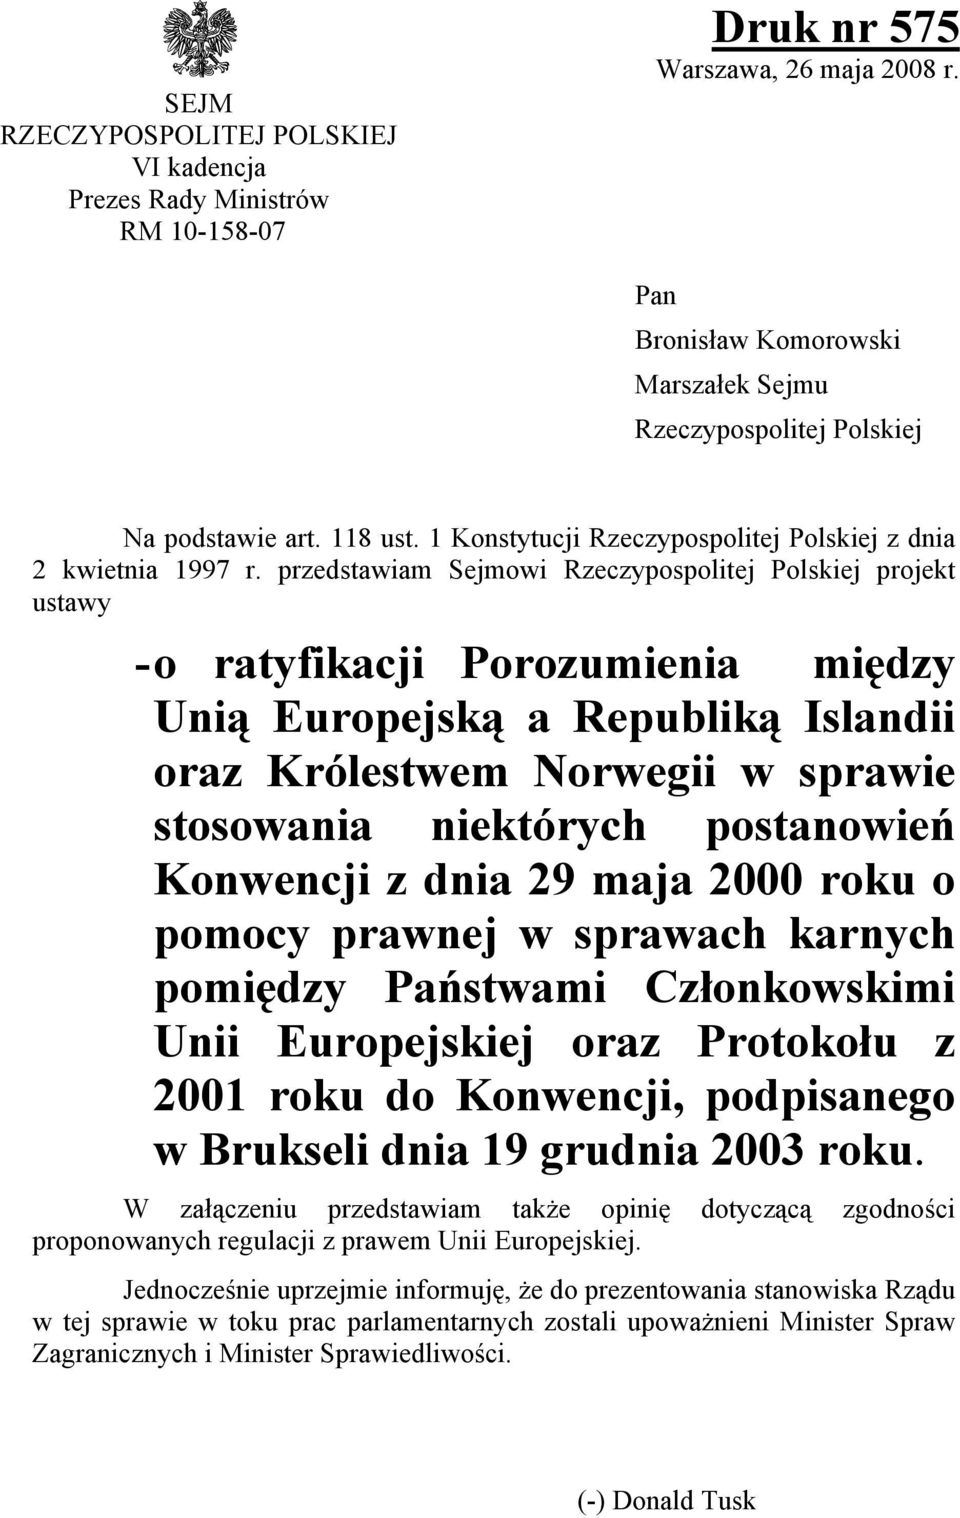 przedstawiam Sejmowi Rzeczypospolitej Polskiej projekt ustawy - o ratyfikacji Porozumienia między Unią Europejską a Republiką Islandii oraz Królestwem Norwegii w sprawie stosowania niektórych